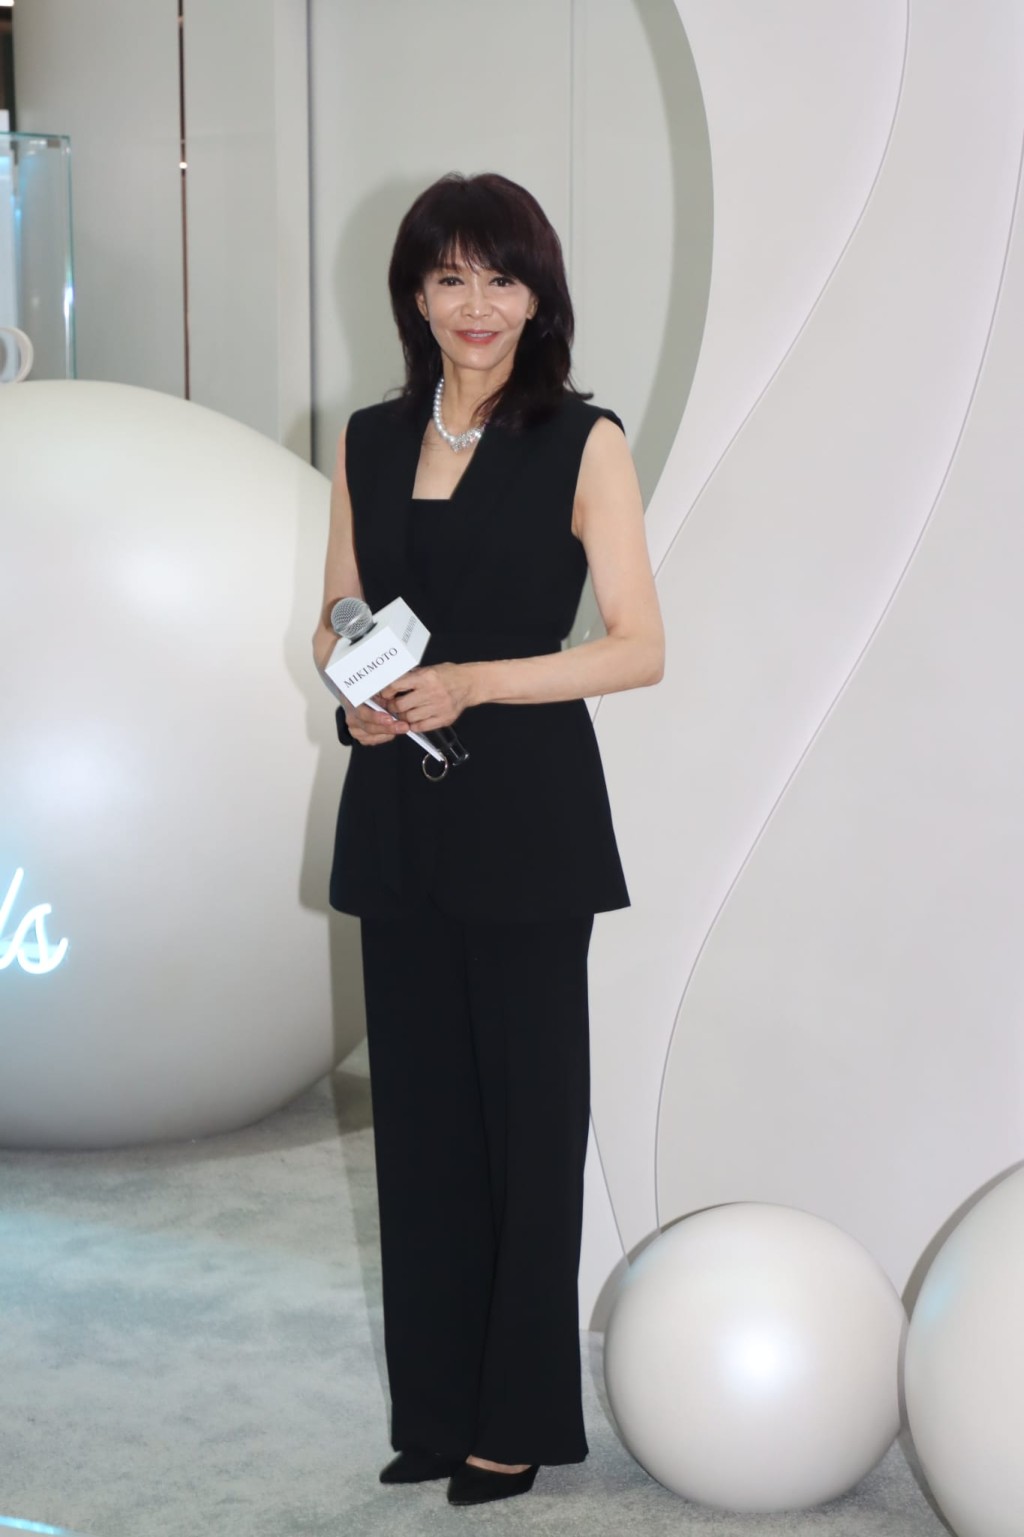 鄭裕玲為日本殿堂級珠寶品牌舉行期間限定店的揭幕活動擔任司儀。